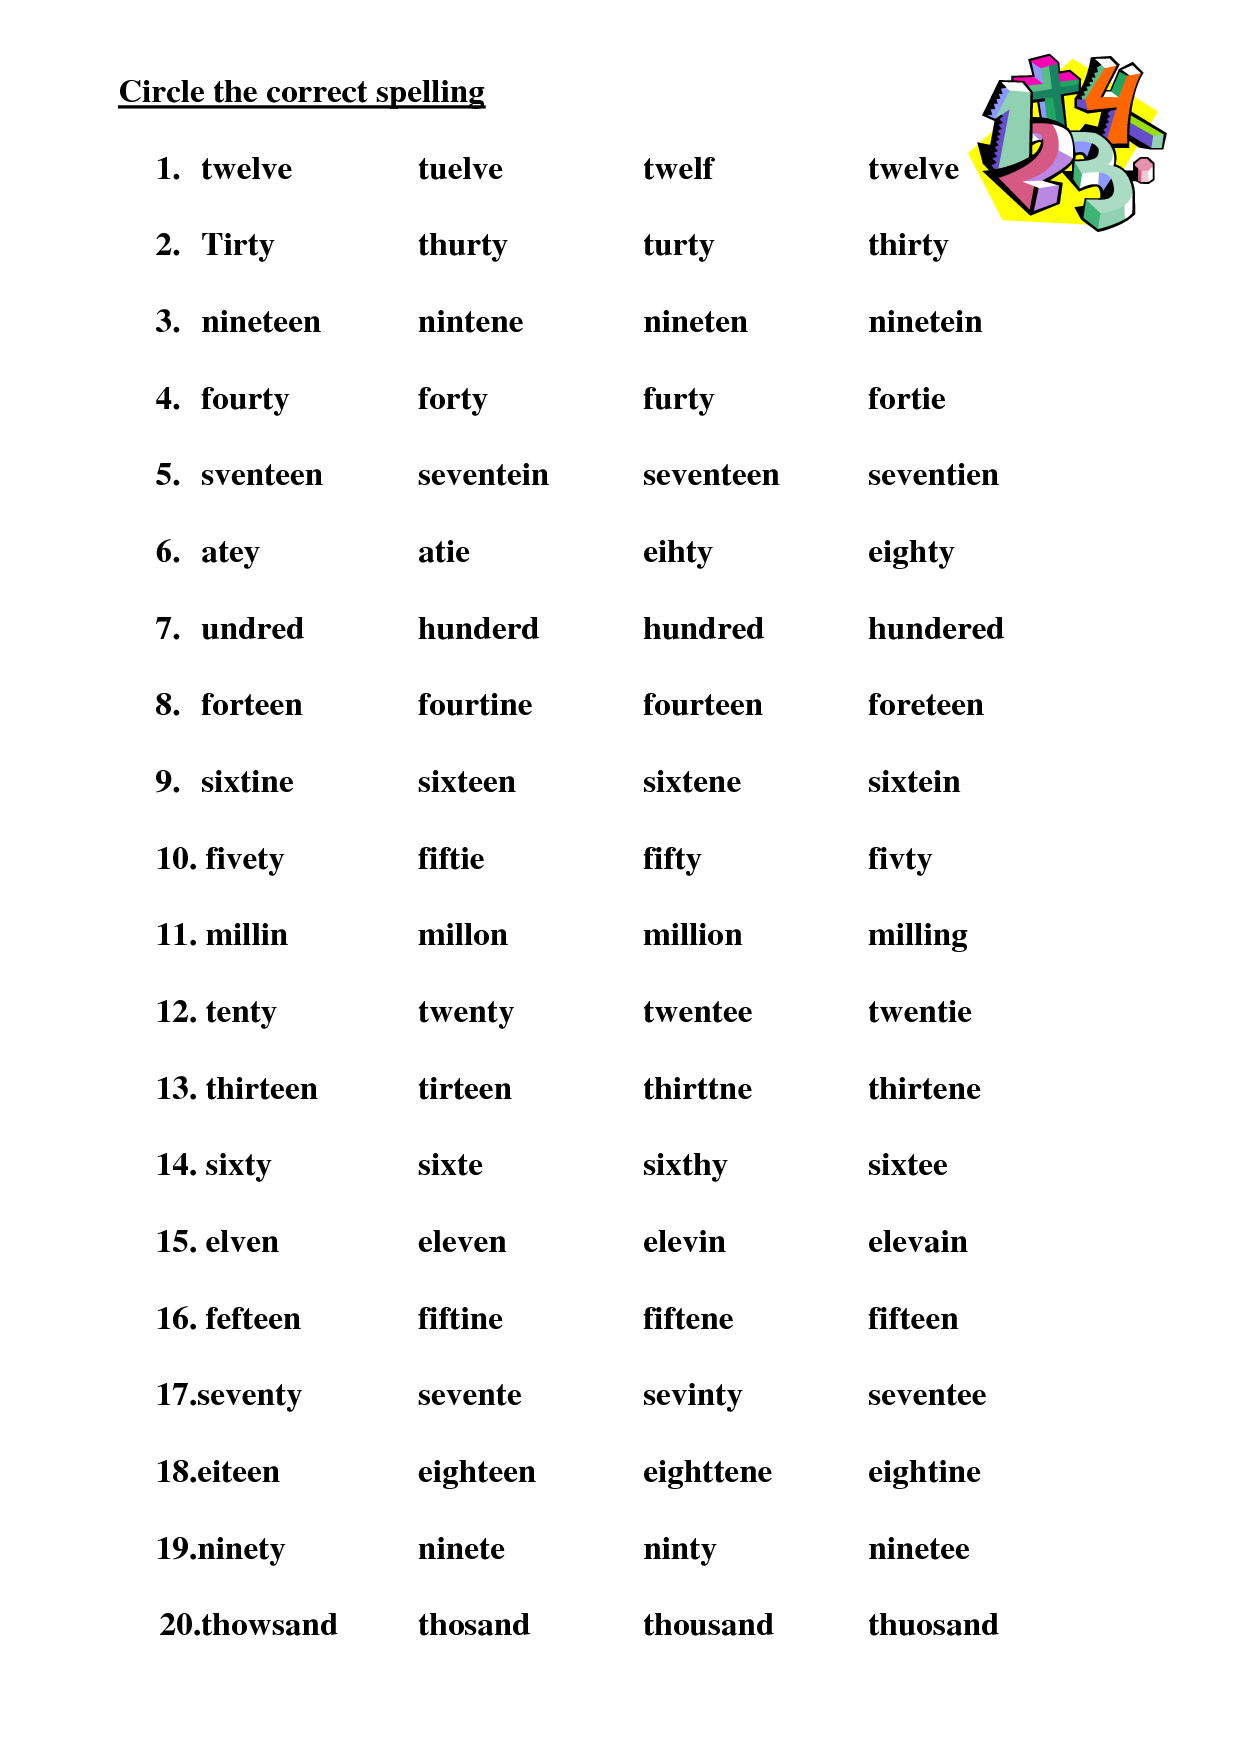 create-spelling-worksheets-free-printable-printable-templates